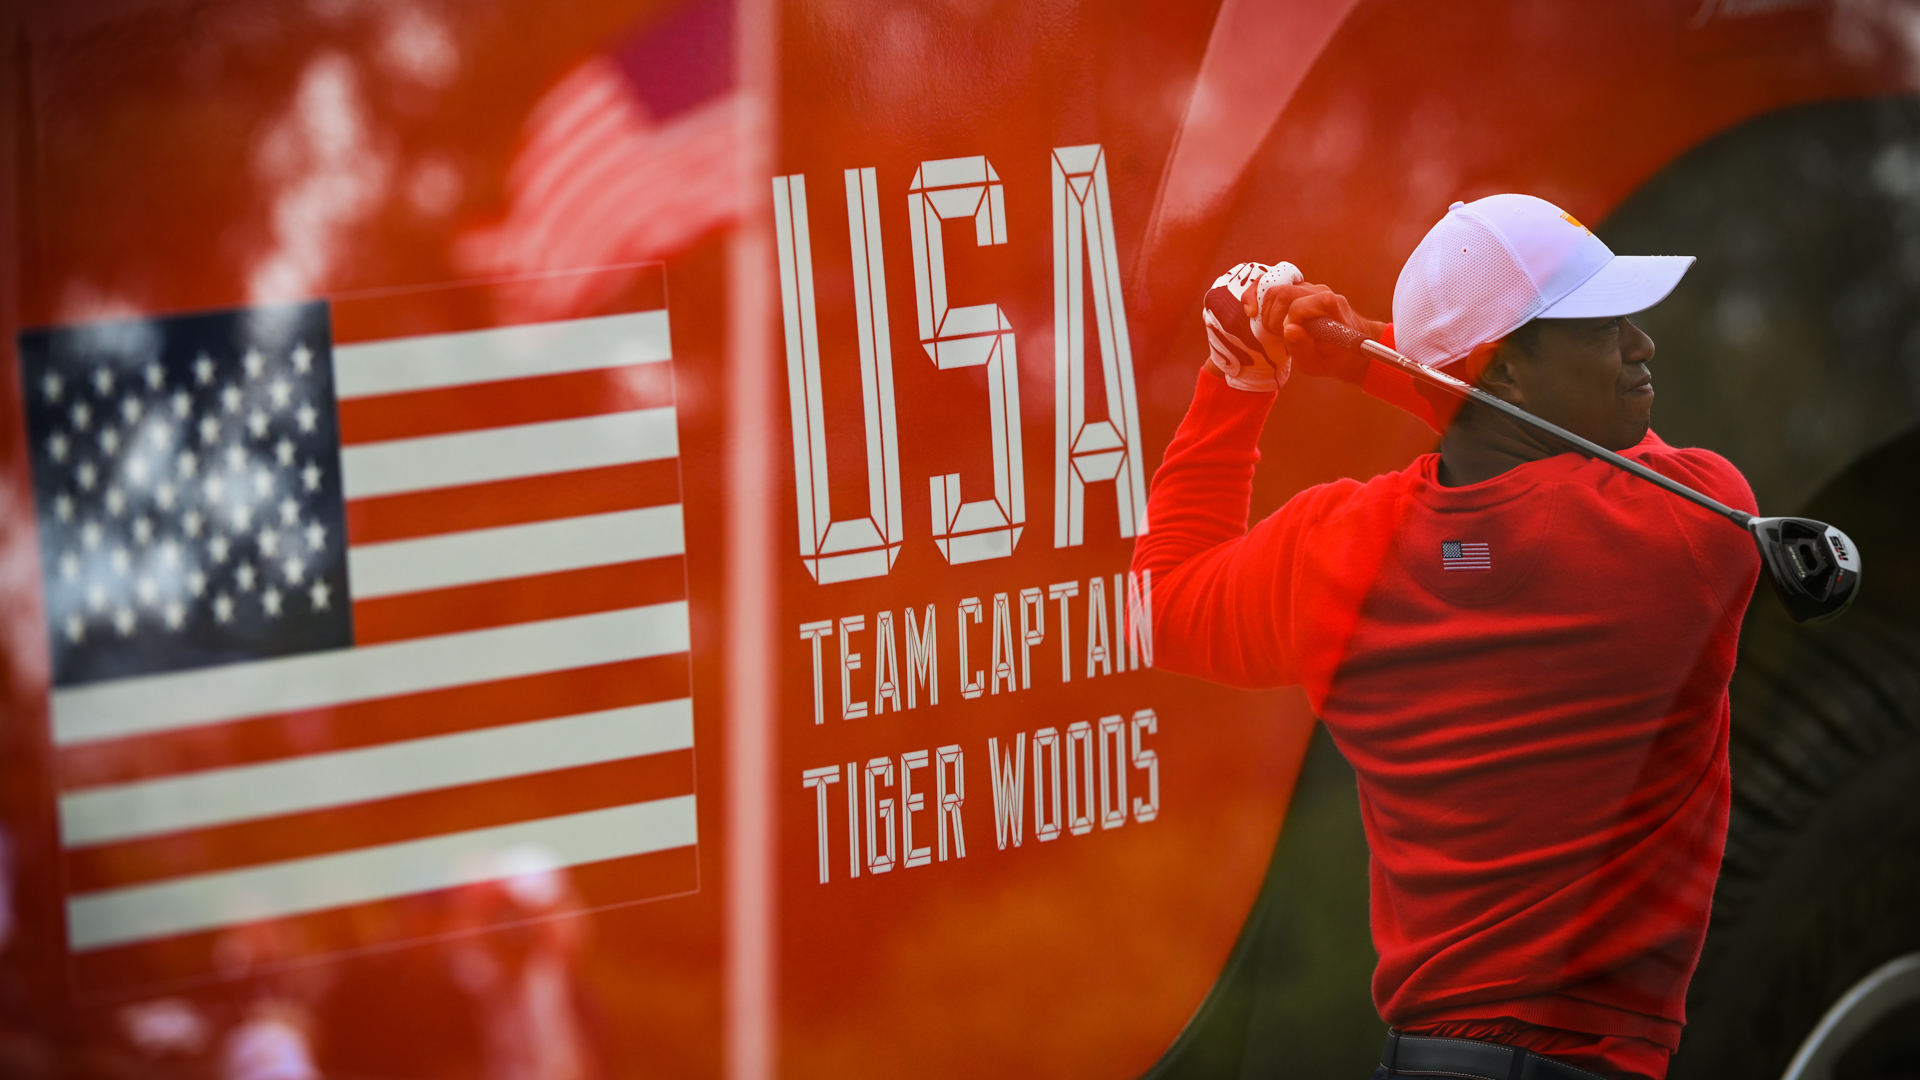 Những con số ấn tượng về Presidents Cup 2019 và Tiger Woods ở giải đấu